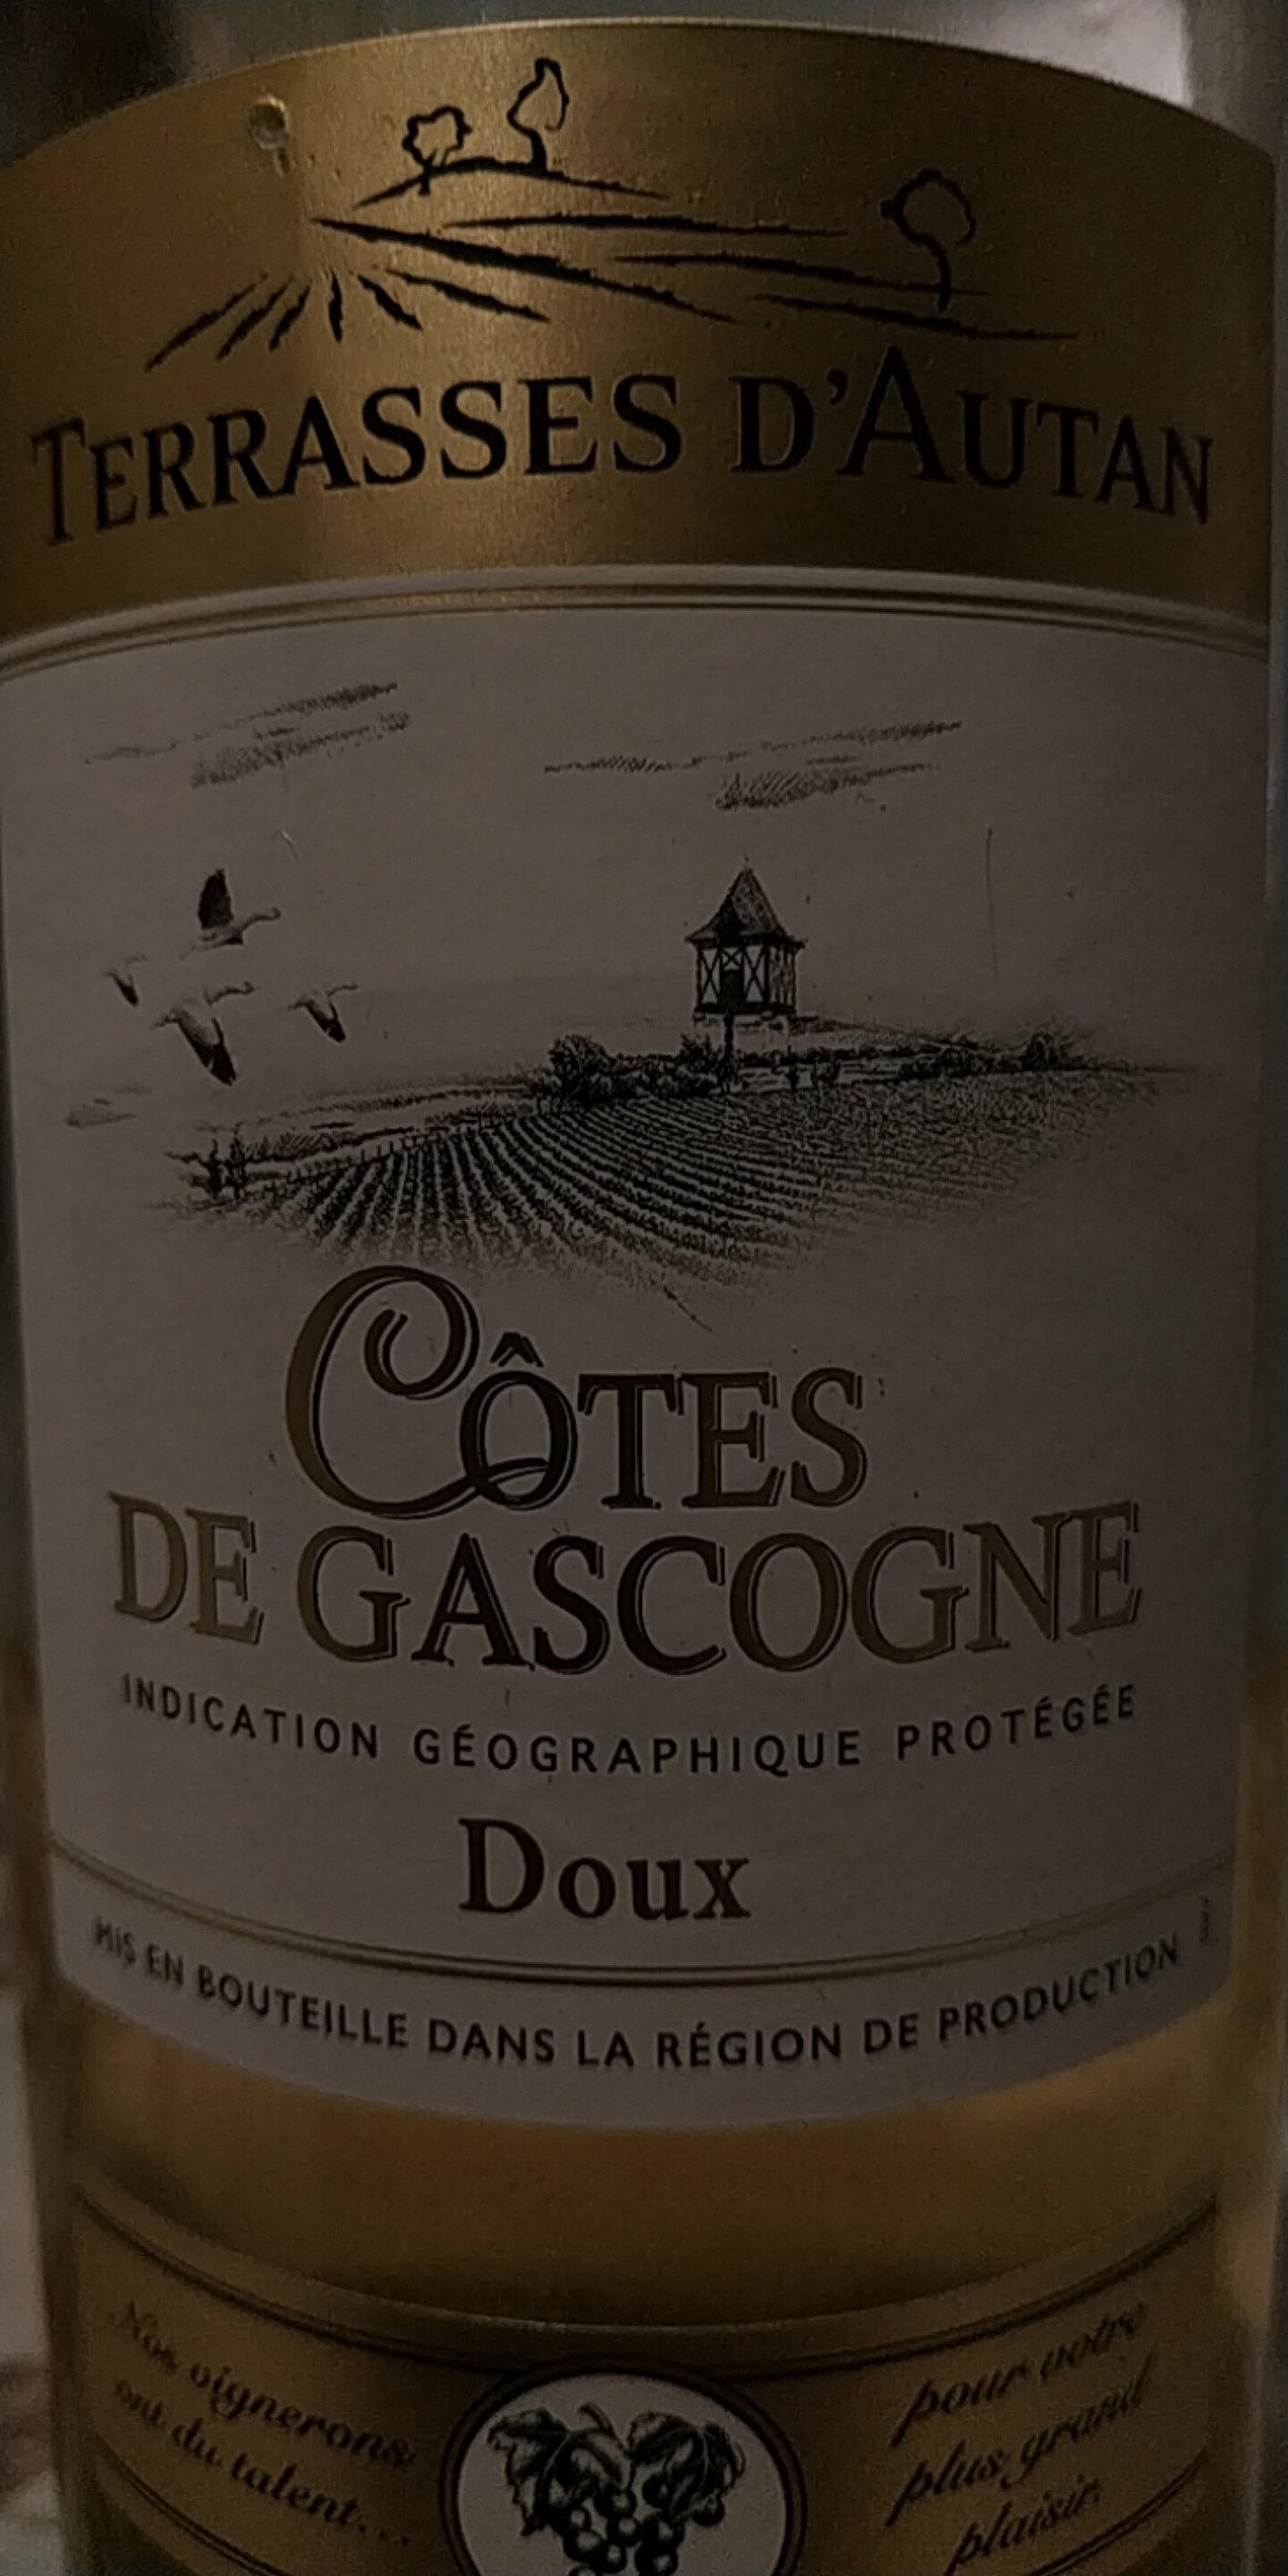 Côtes de Gascogne blanc doux I.G.P. - Ingredients - fr